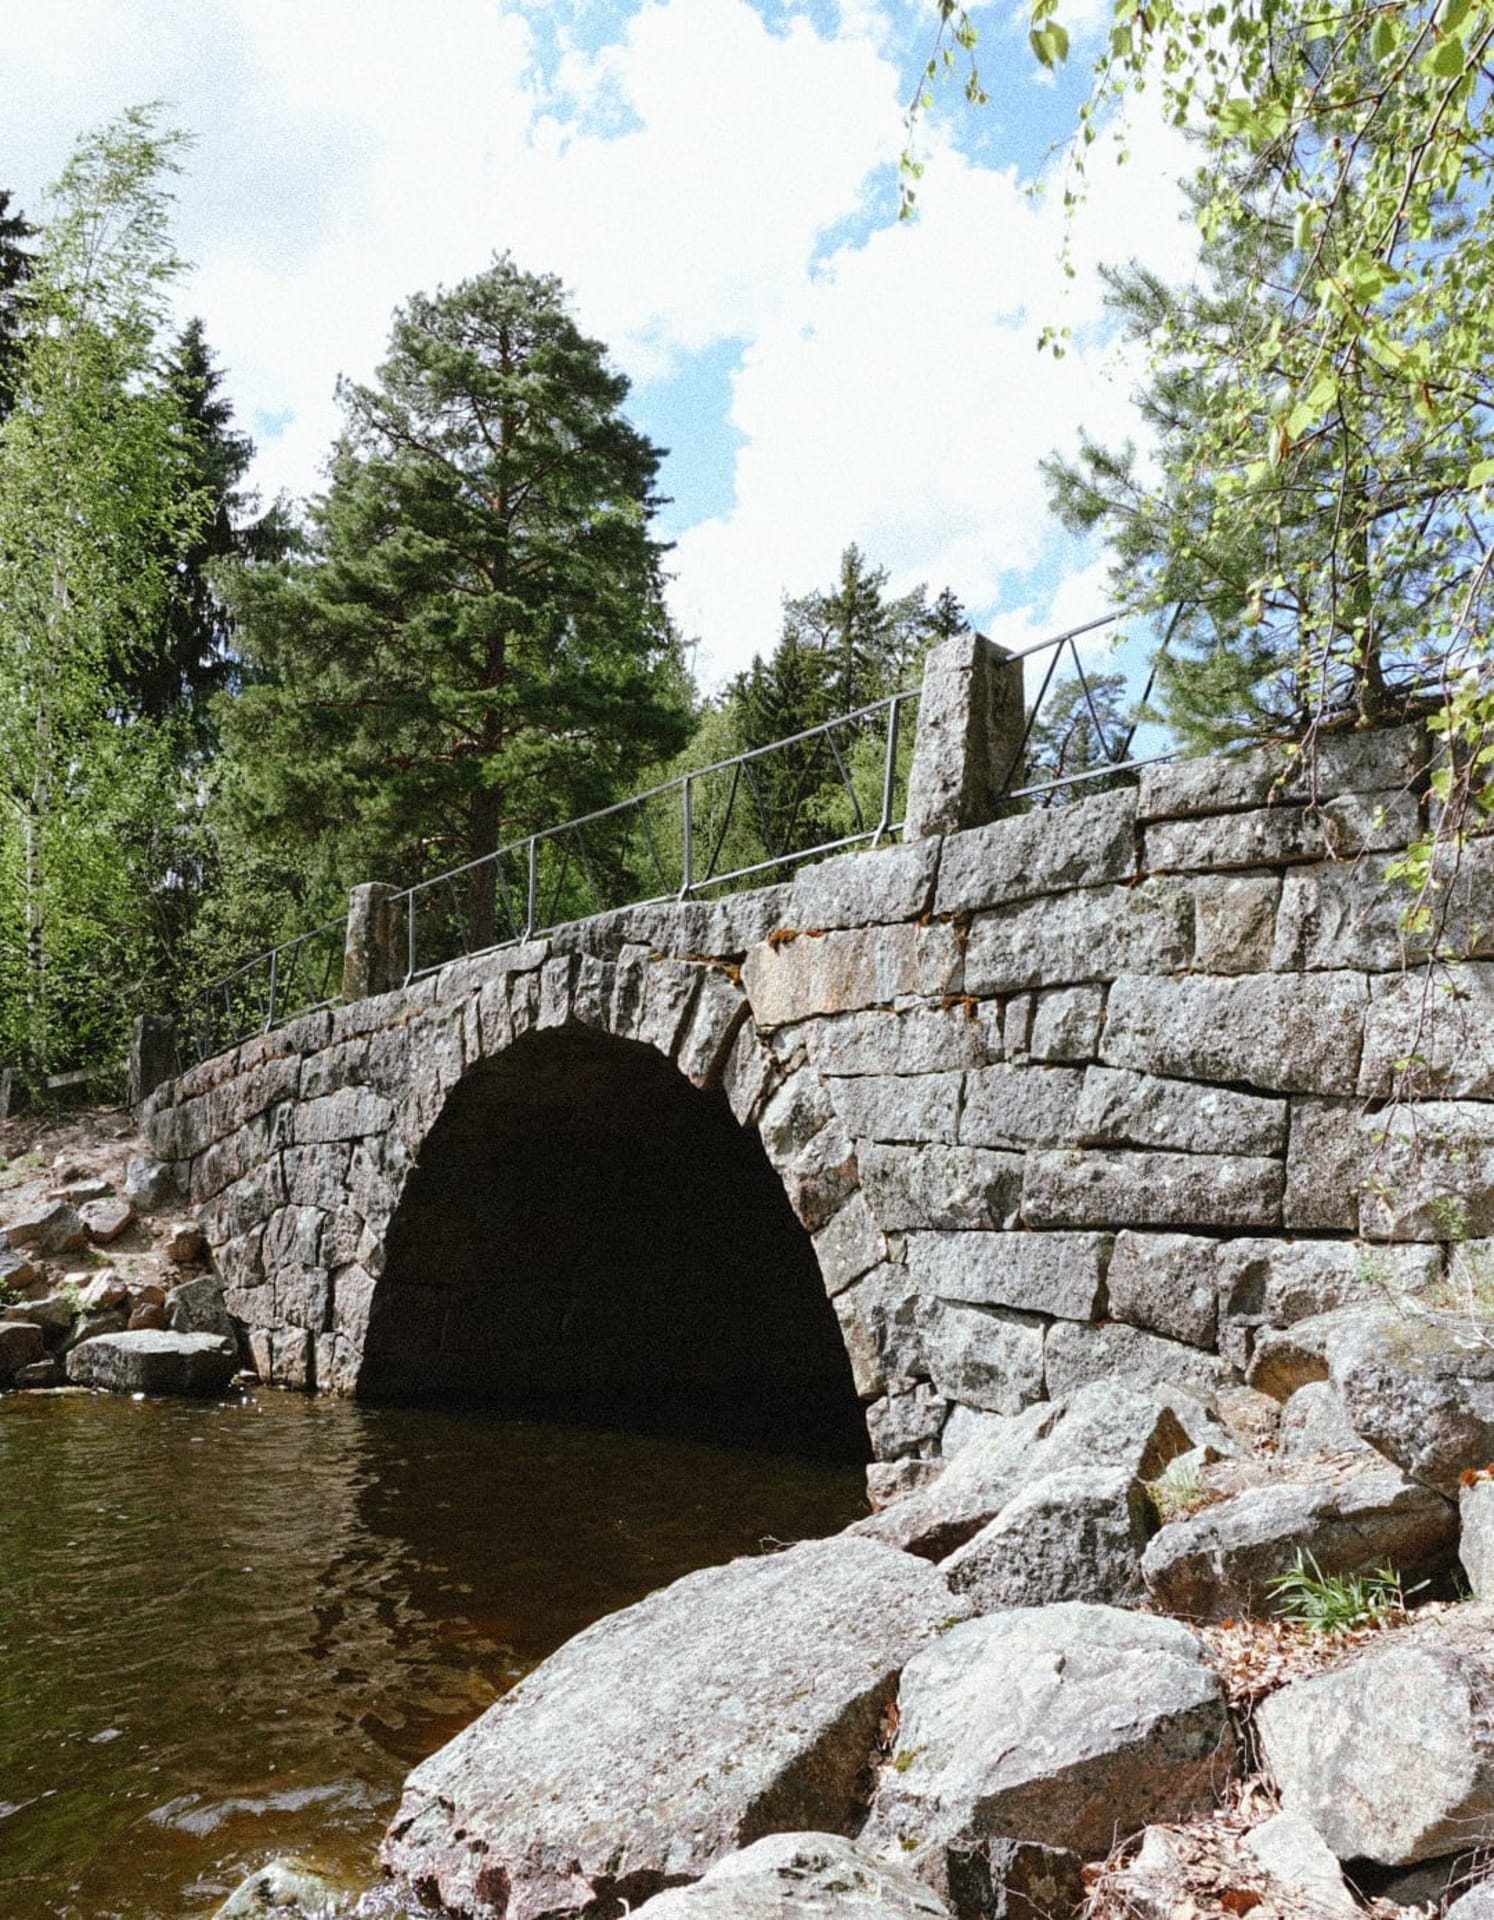 Inkulan vanha holvisilta Viljakkalan kylässä. Inkula bridge in Viljakkala.